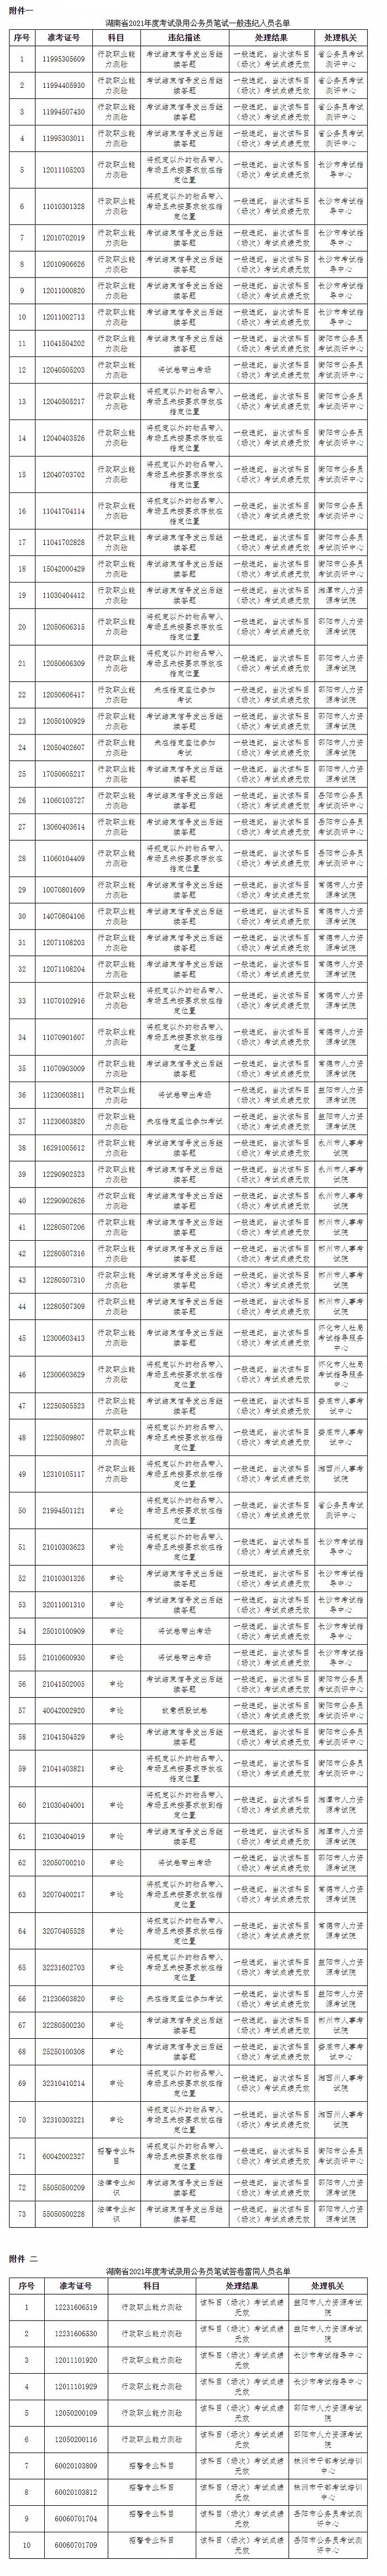 湖南公务员考试73人存违纪违规、10人被认定答卷雷同被处理